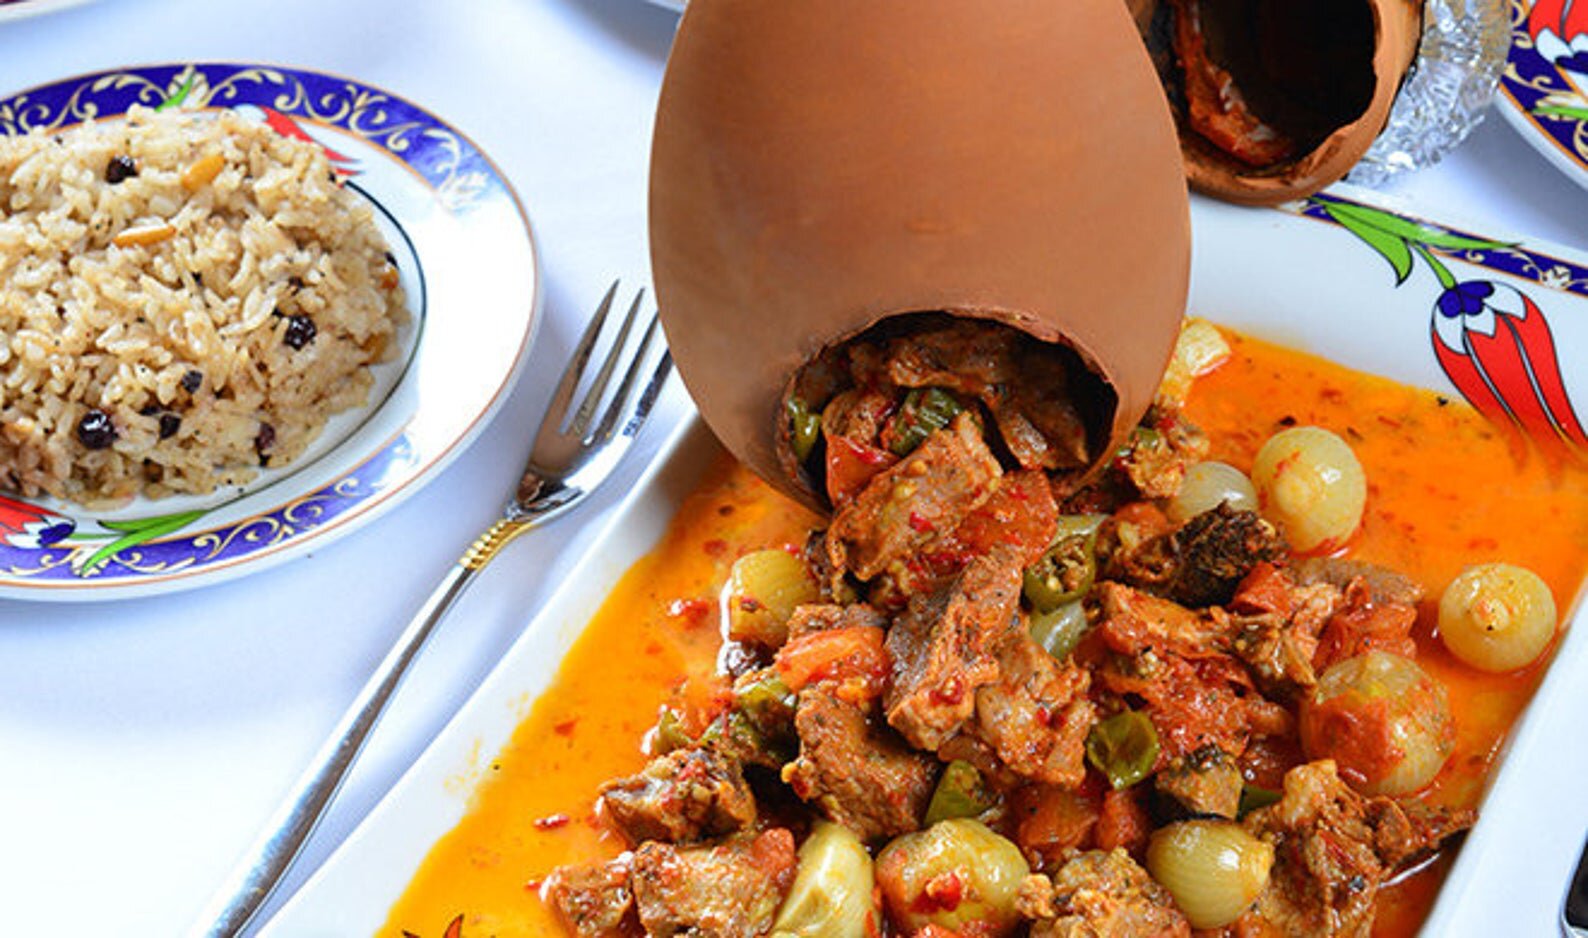 Testi Kebabi - Pottery Kebab - Turkish Cuisine